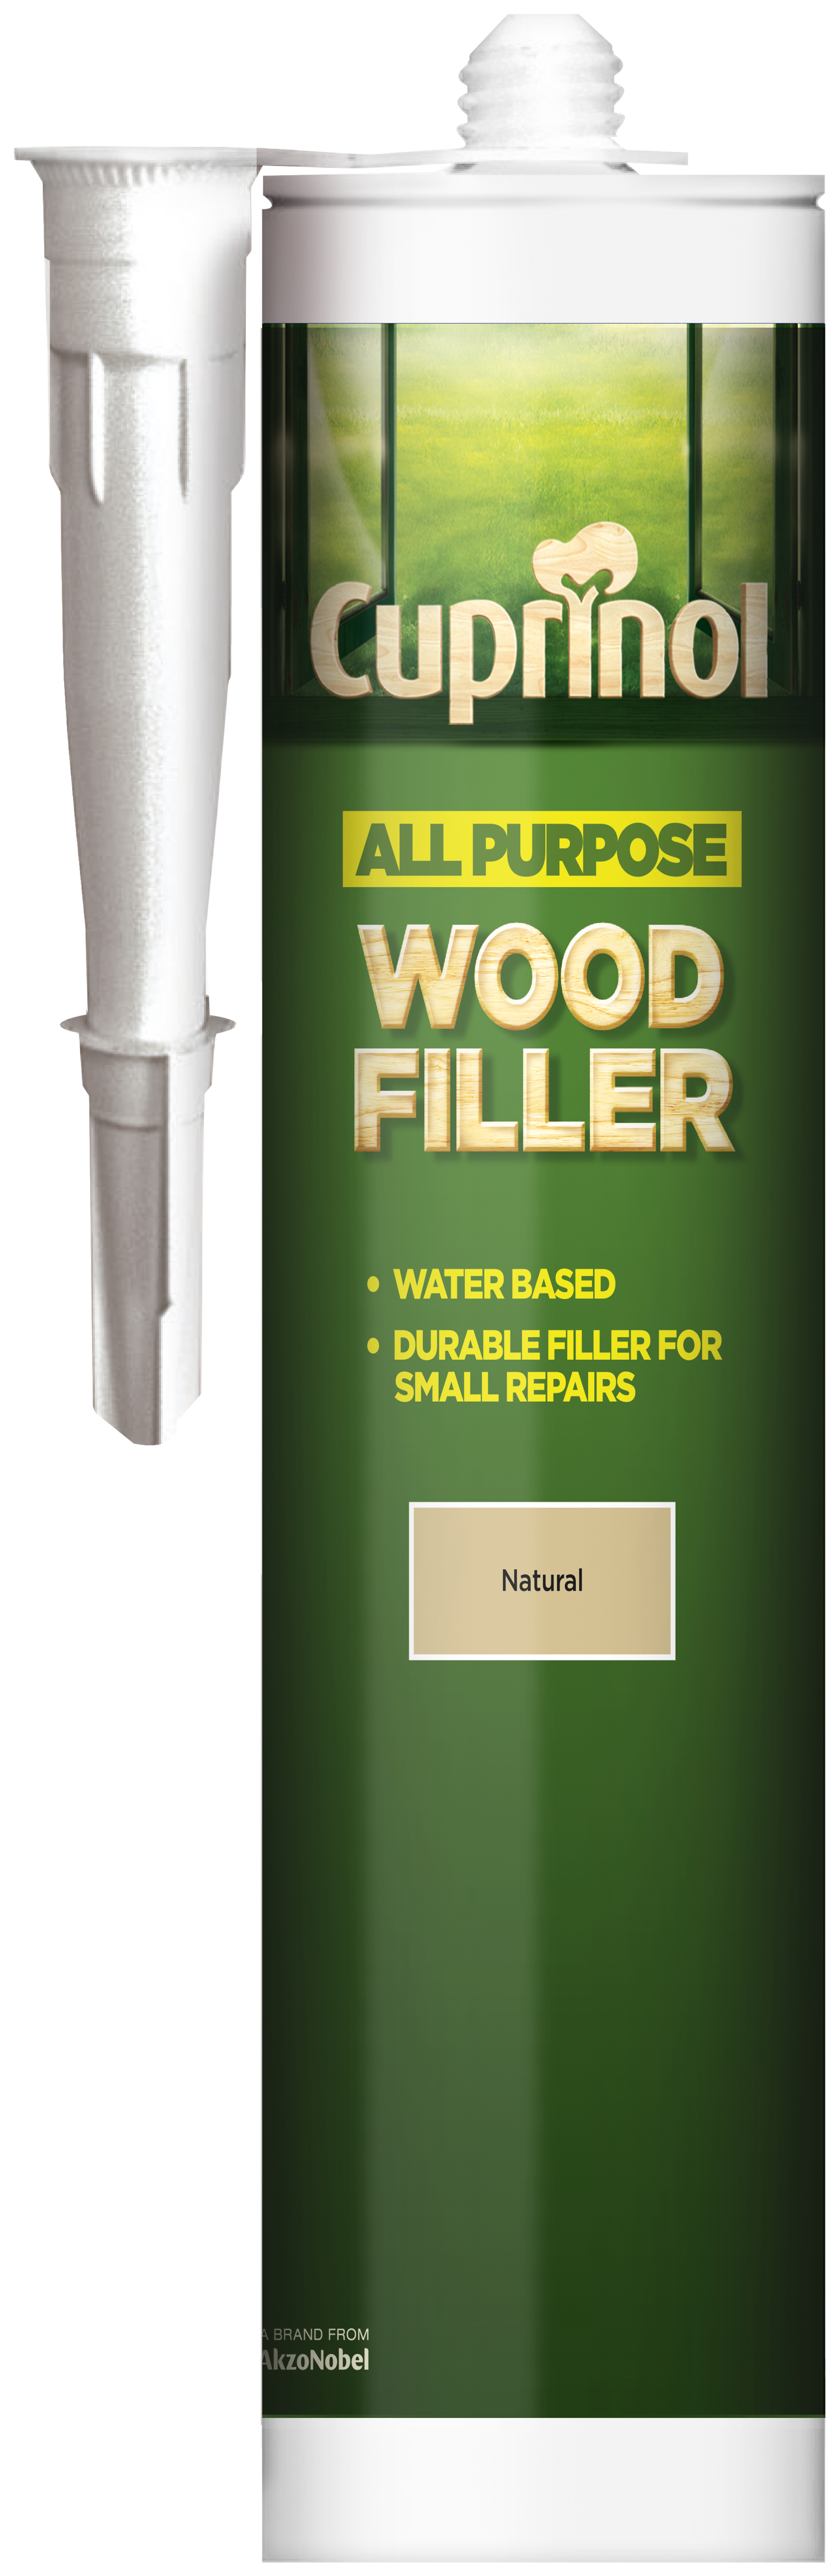 Image of Cuprinol All Purpose Wood Filler - Natural 310ml